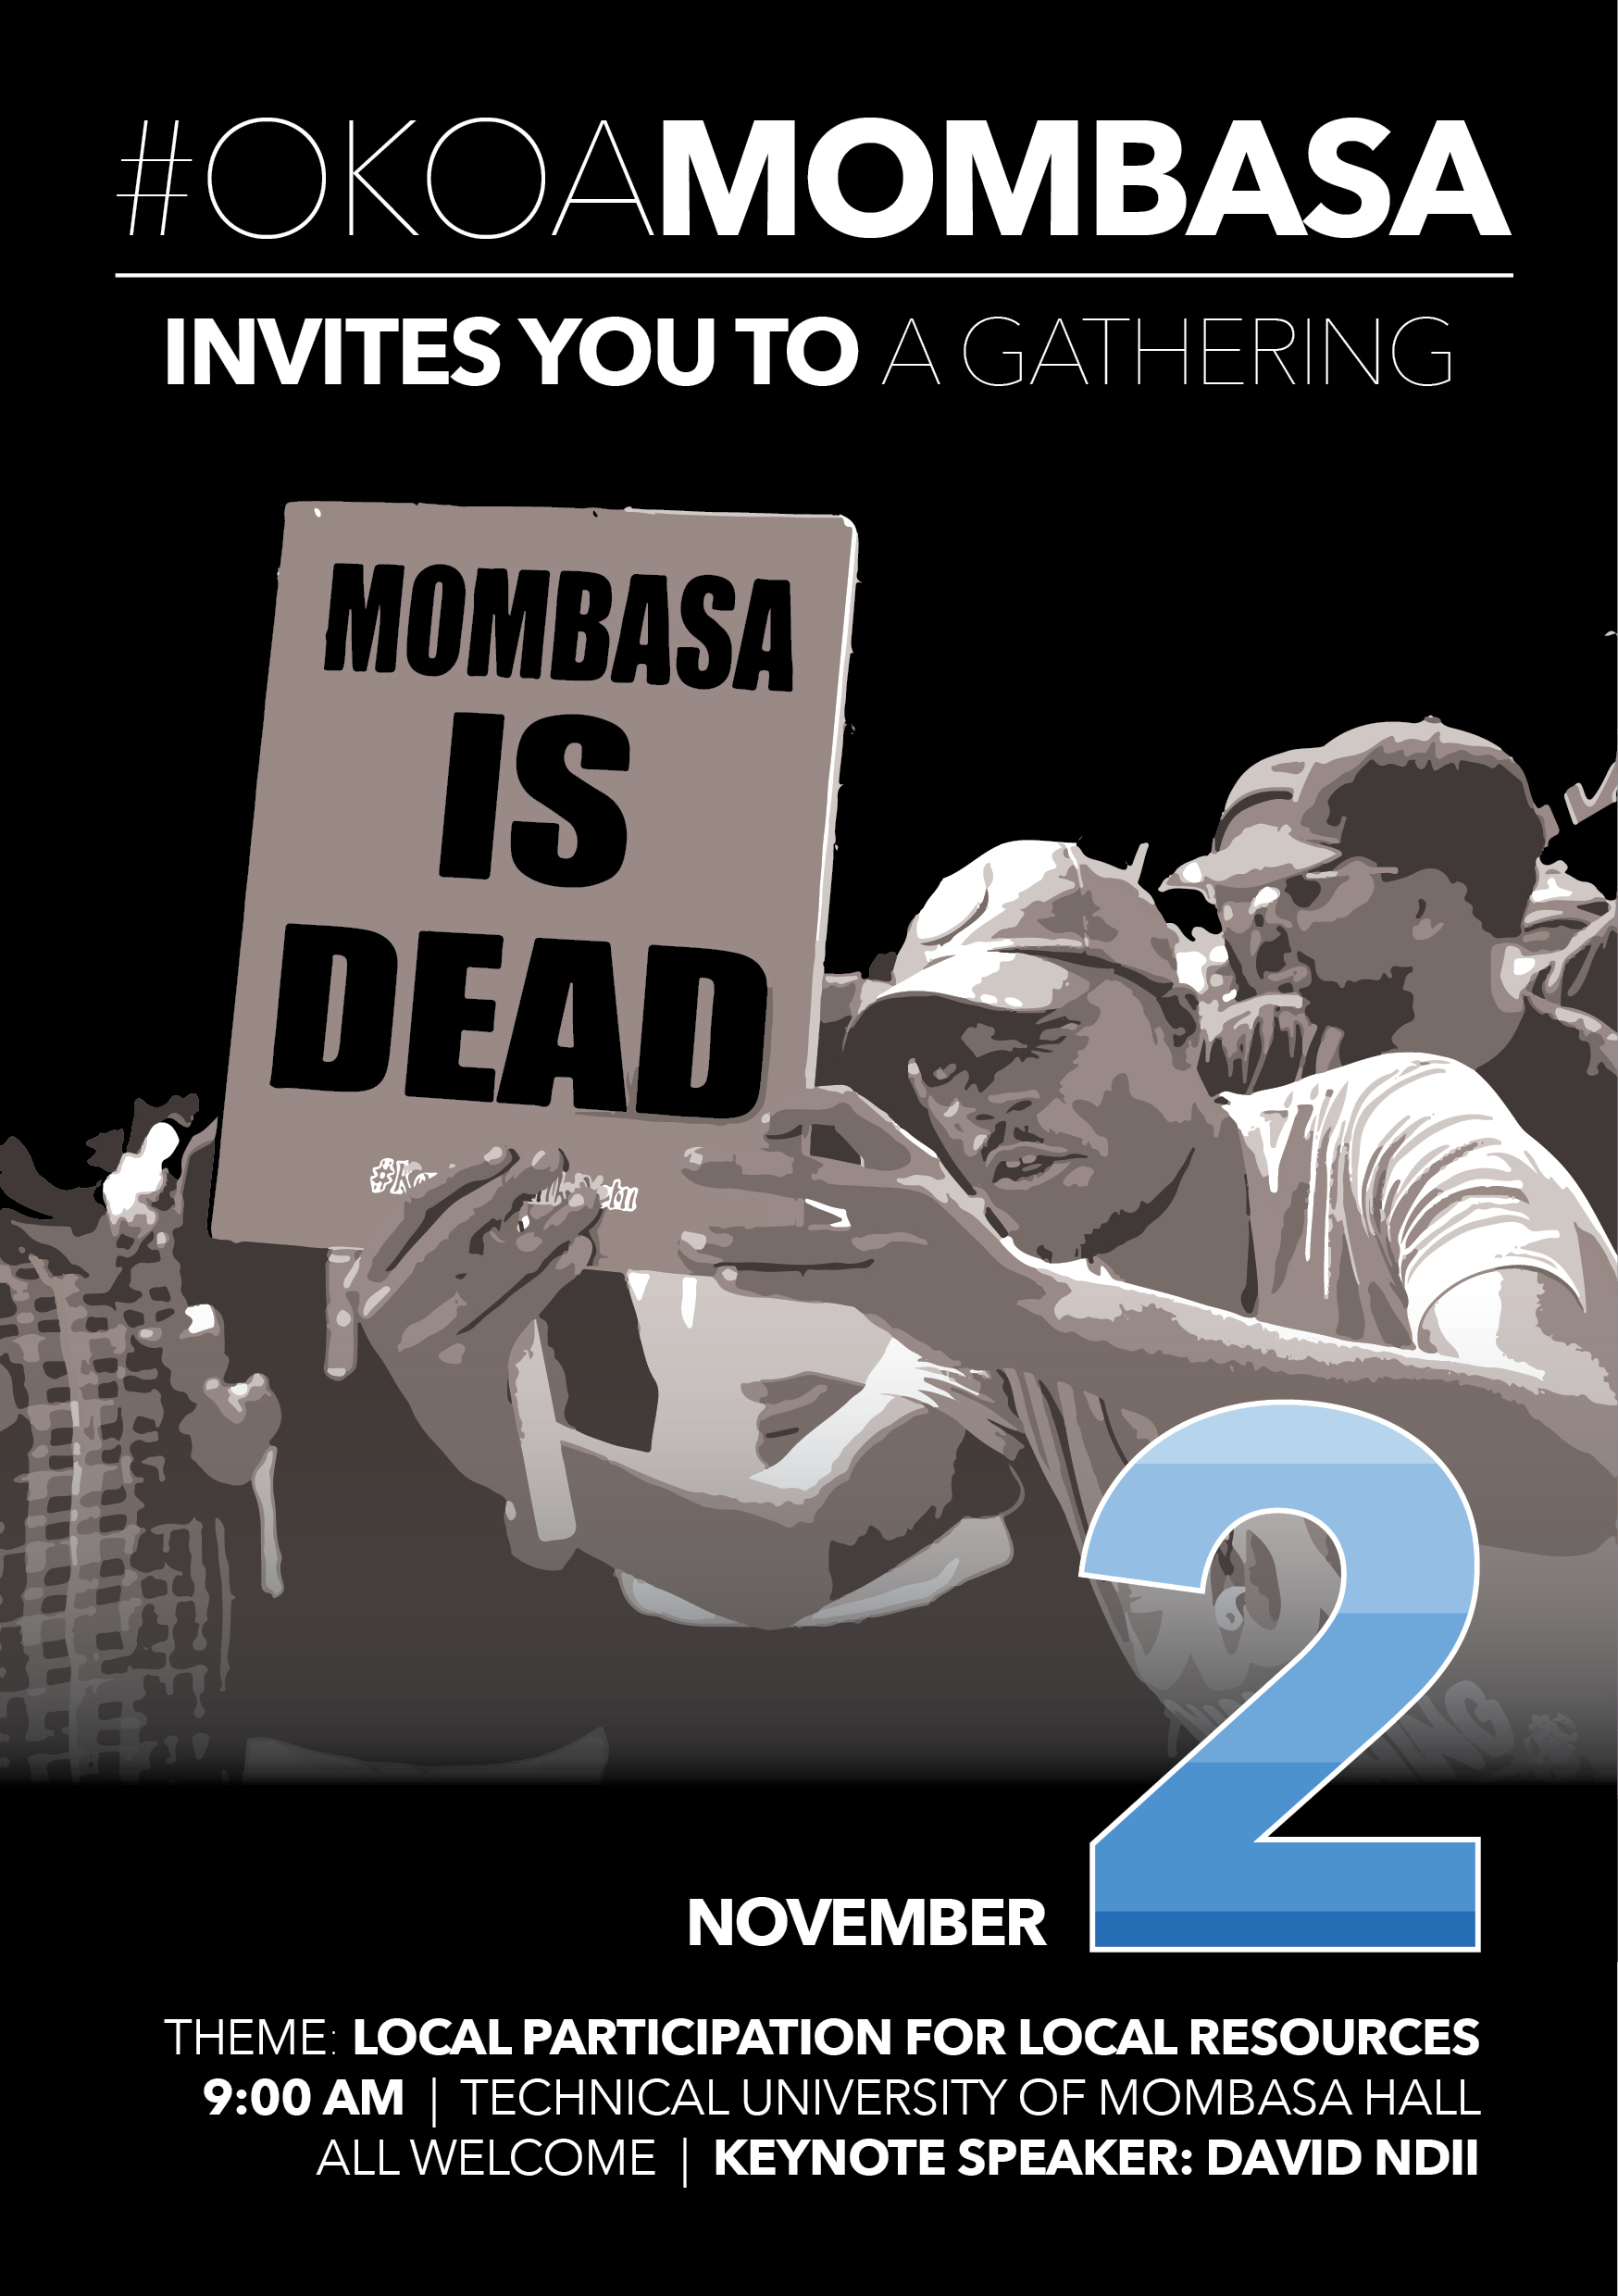 Launch of the Okoa Mombasa Coalition on 2 November 2019